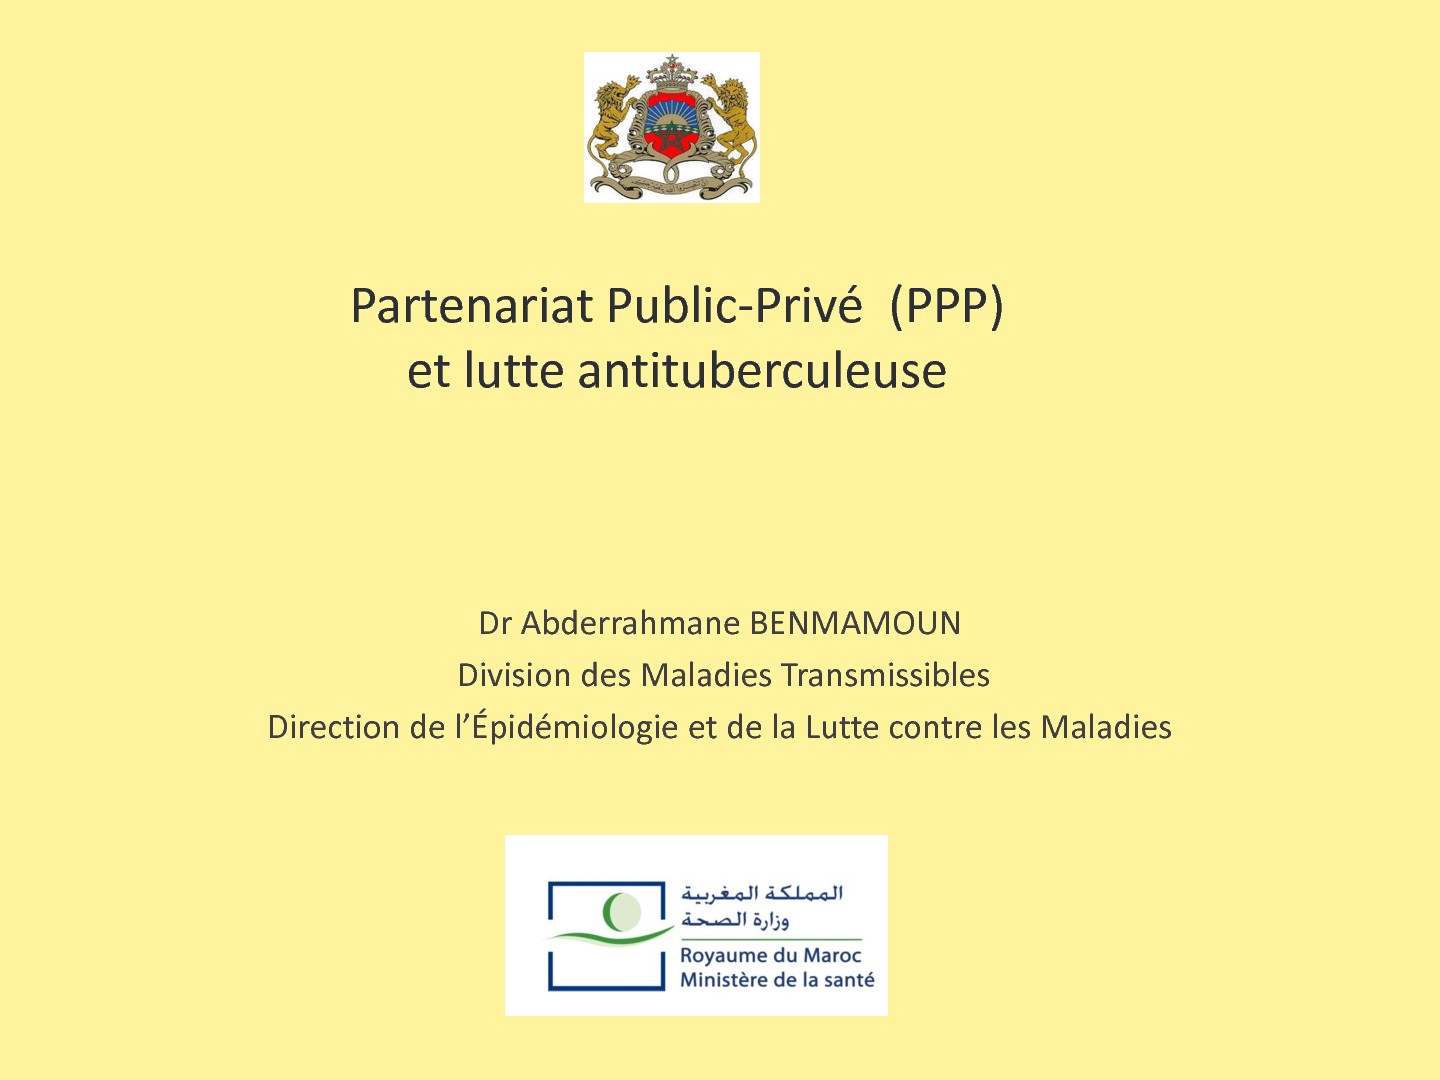 Partenariat Public-Privé (PPP) et lutte antituberculeuse. Abderrahmane BEN MAMOUN